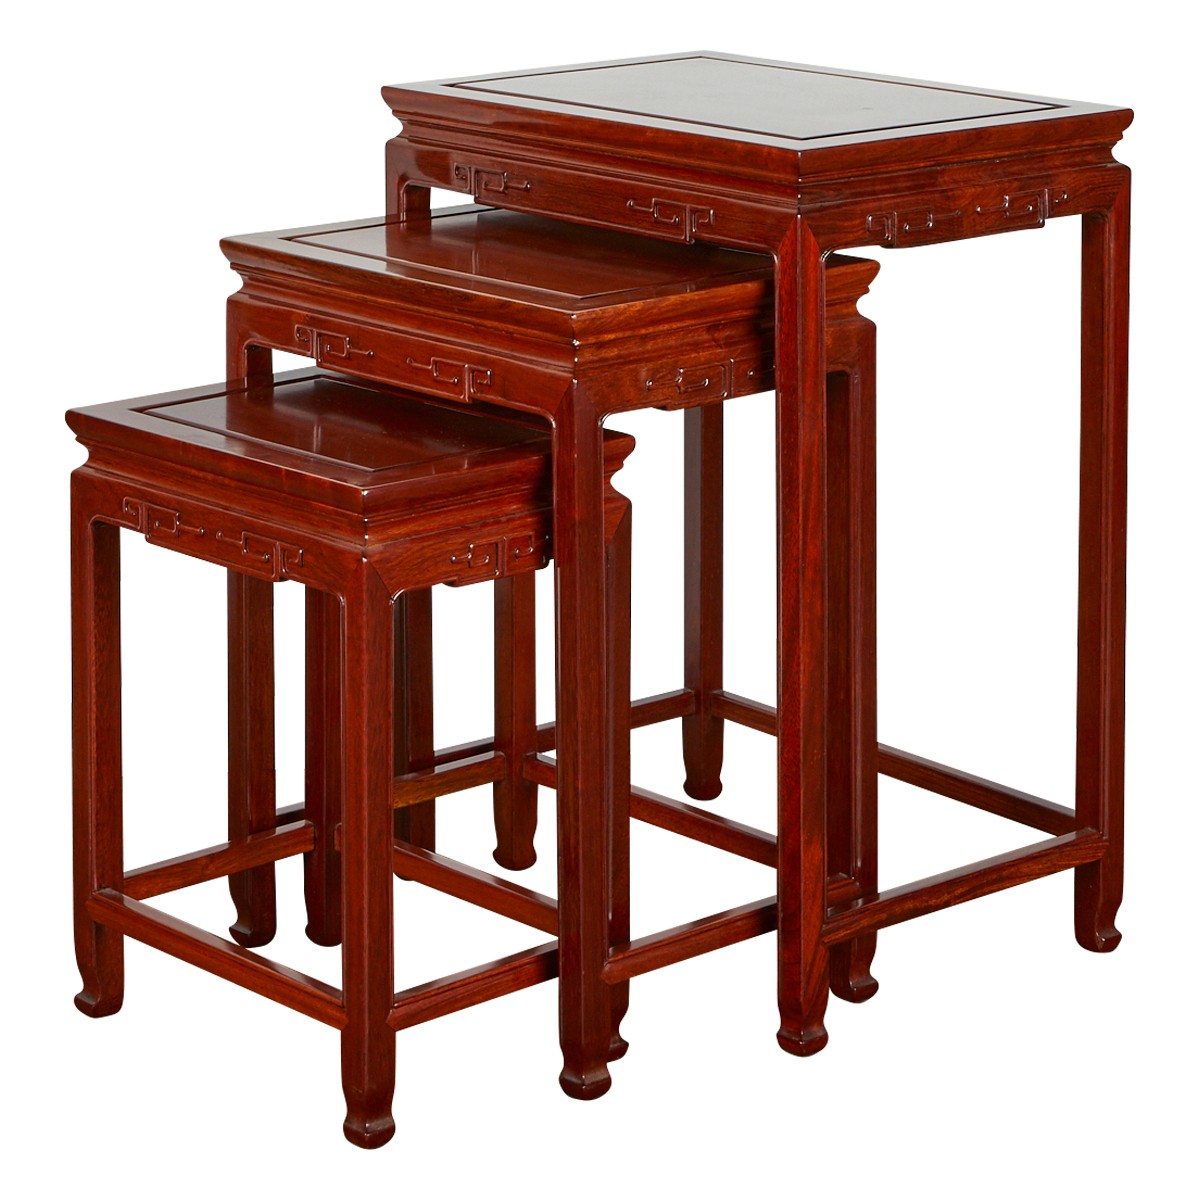 Set 3 Chinese Hardwood Nesting Tables - Image 2 of 2